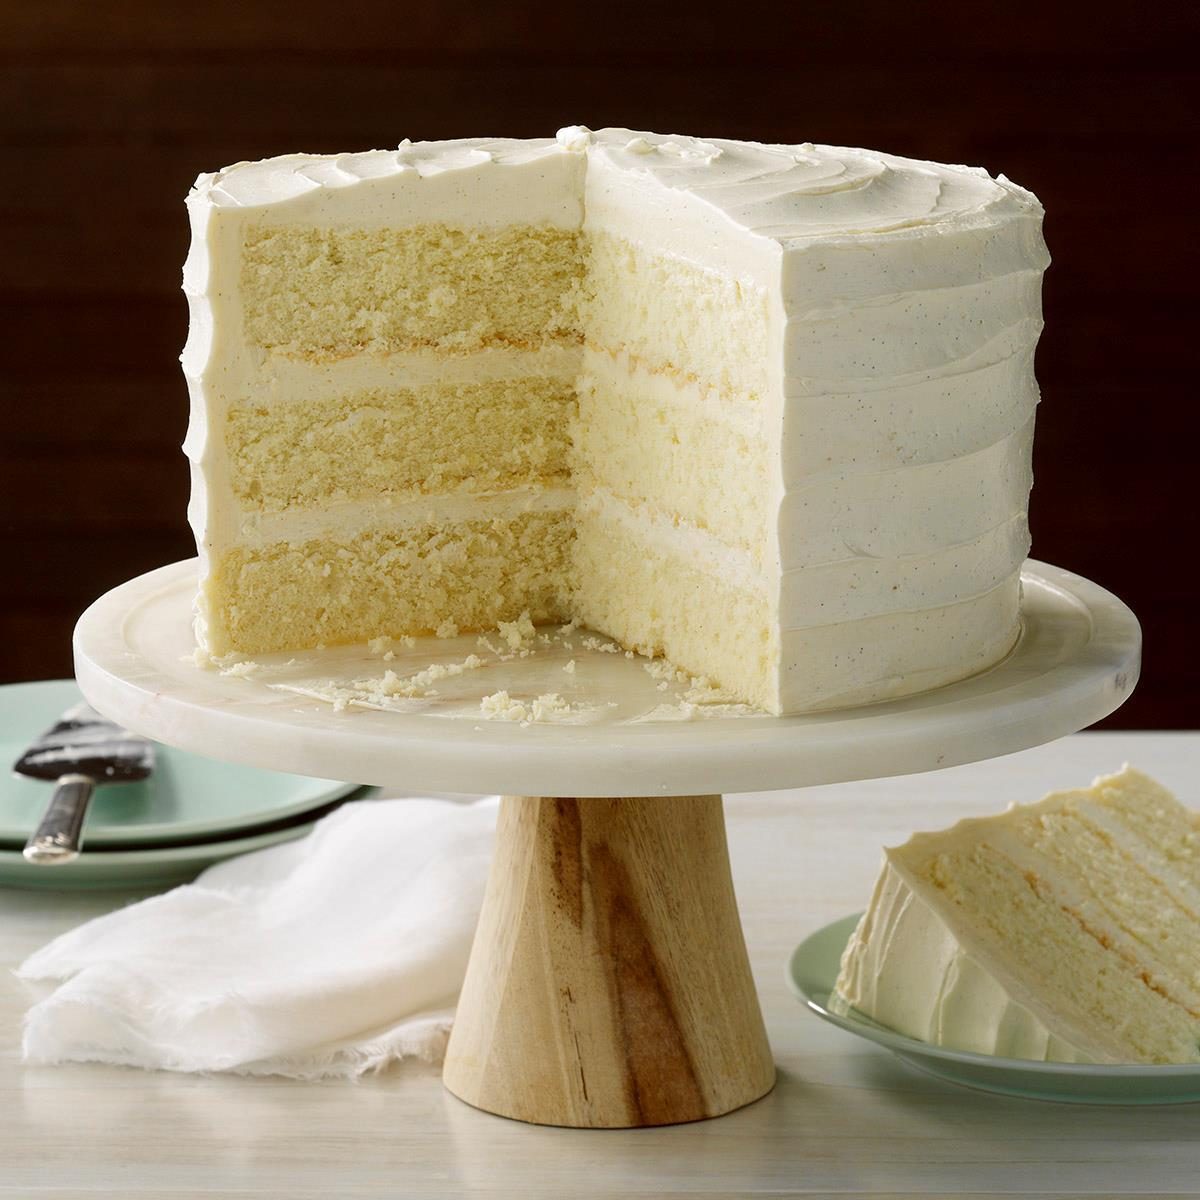 Best Vanilla Cake Recipe: How to Make It